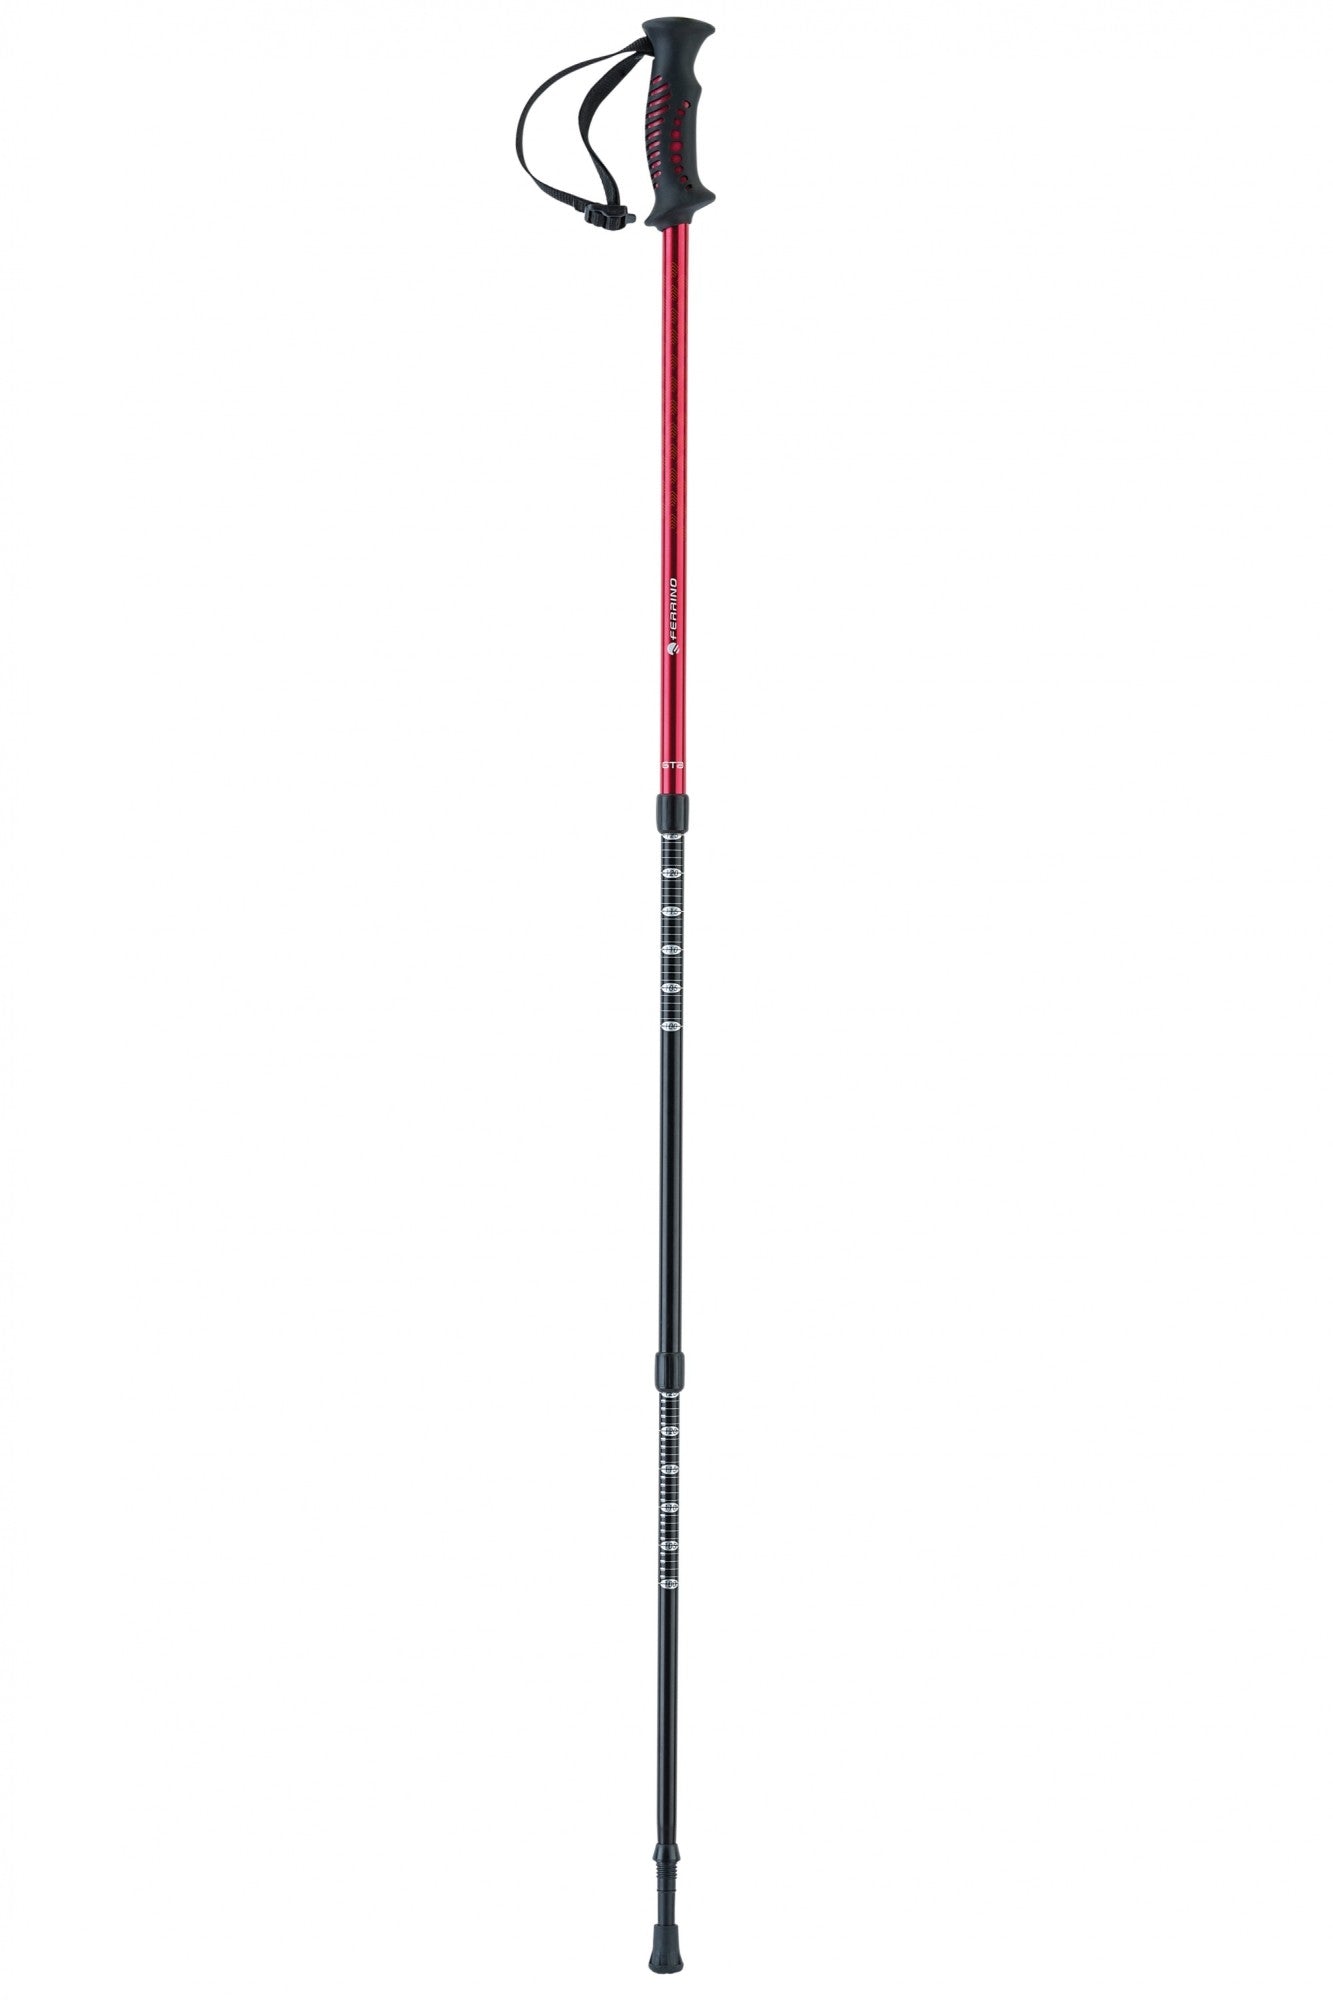 Pair of red/black GTA trekking poles